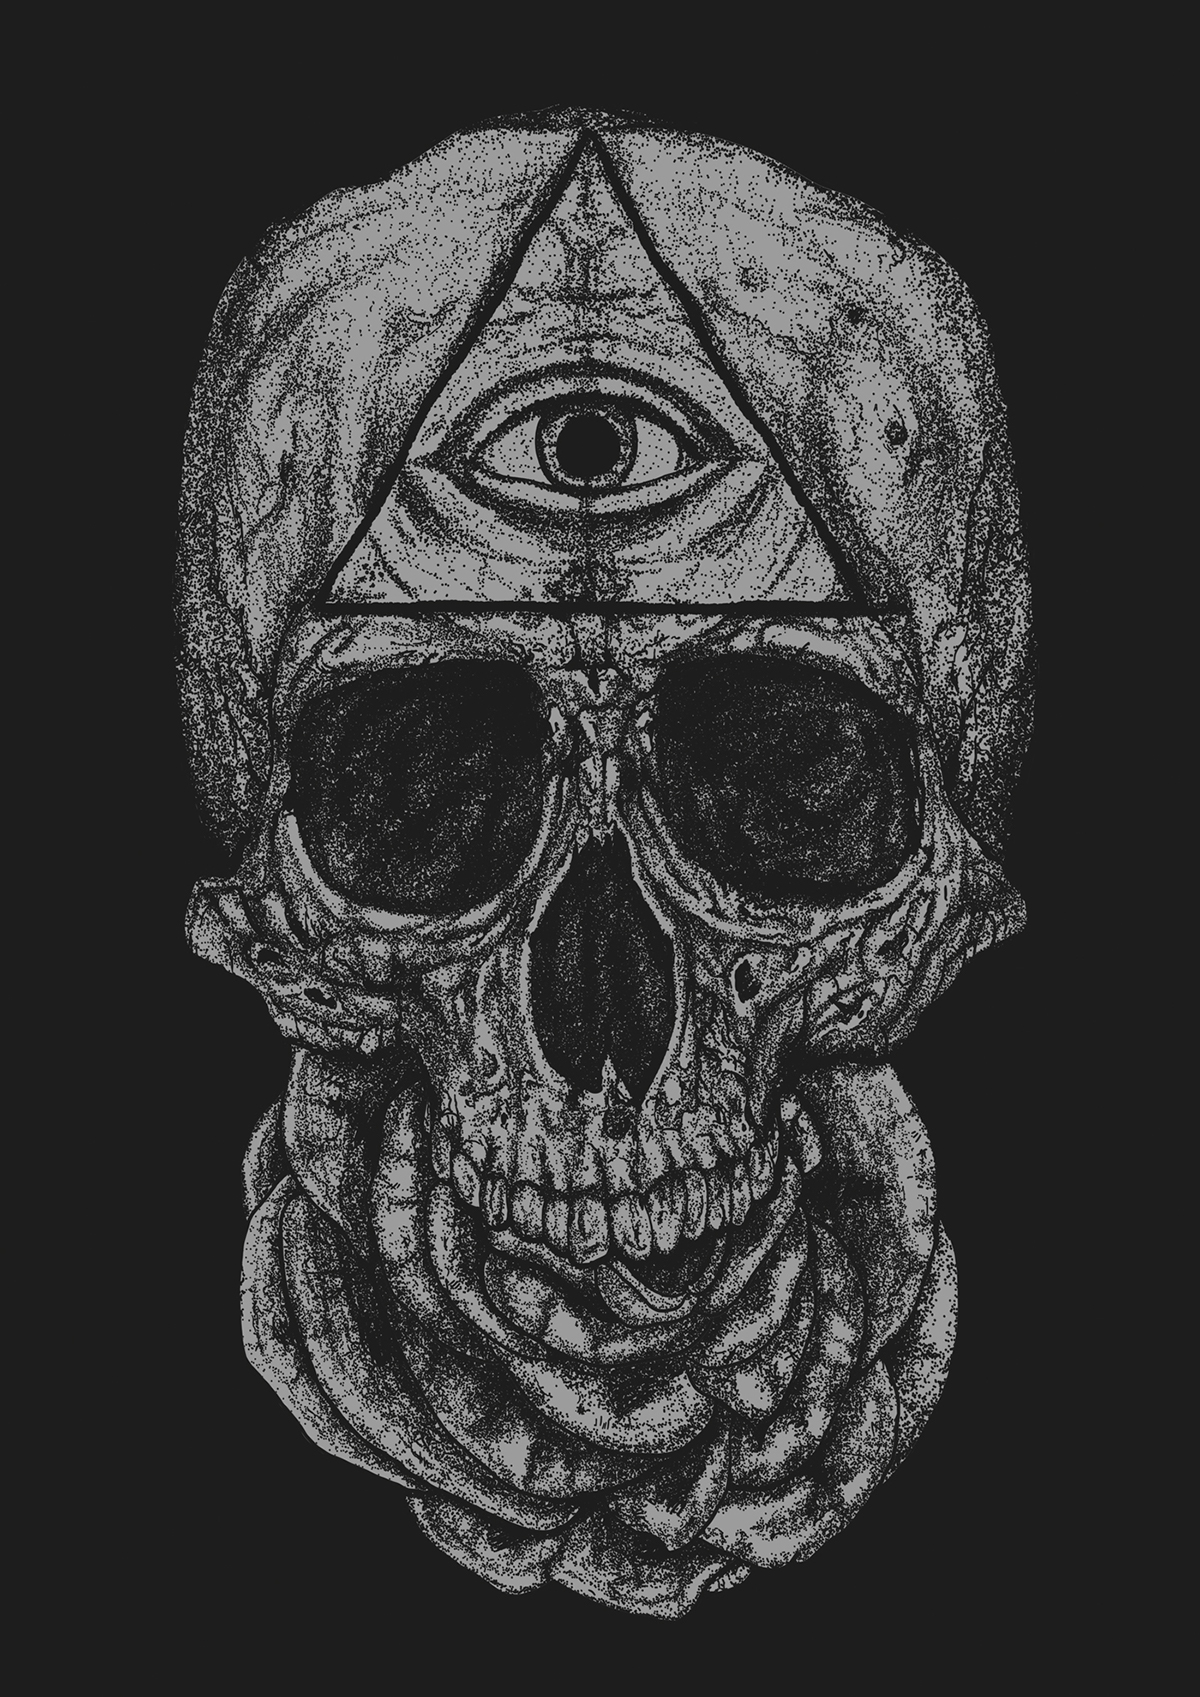 artwork dotwork dark cult occult horror black skull Rooster horse snake nikita kaun Sunturnsintowater